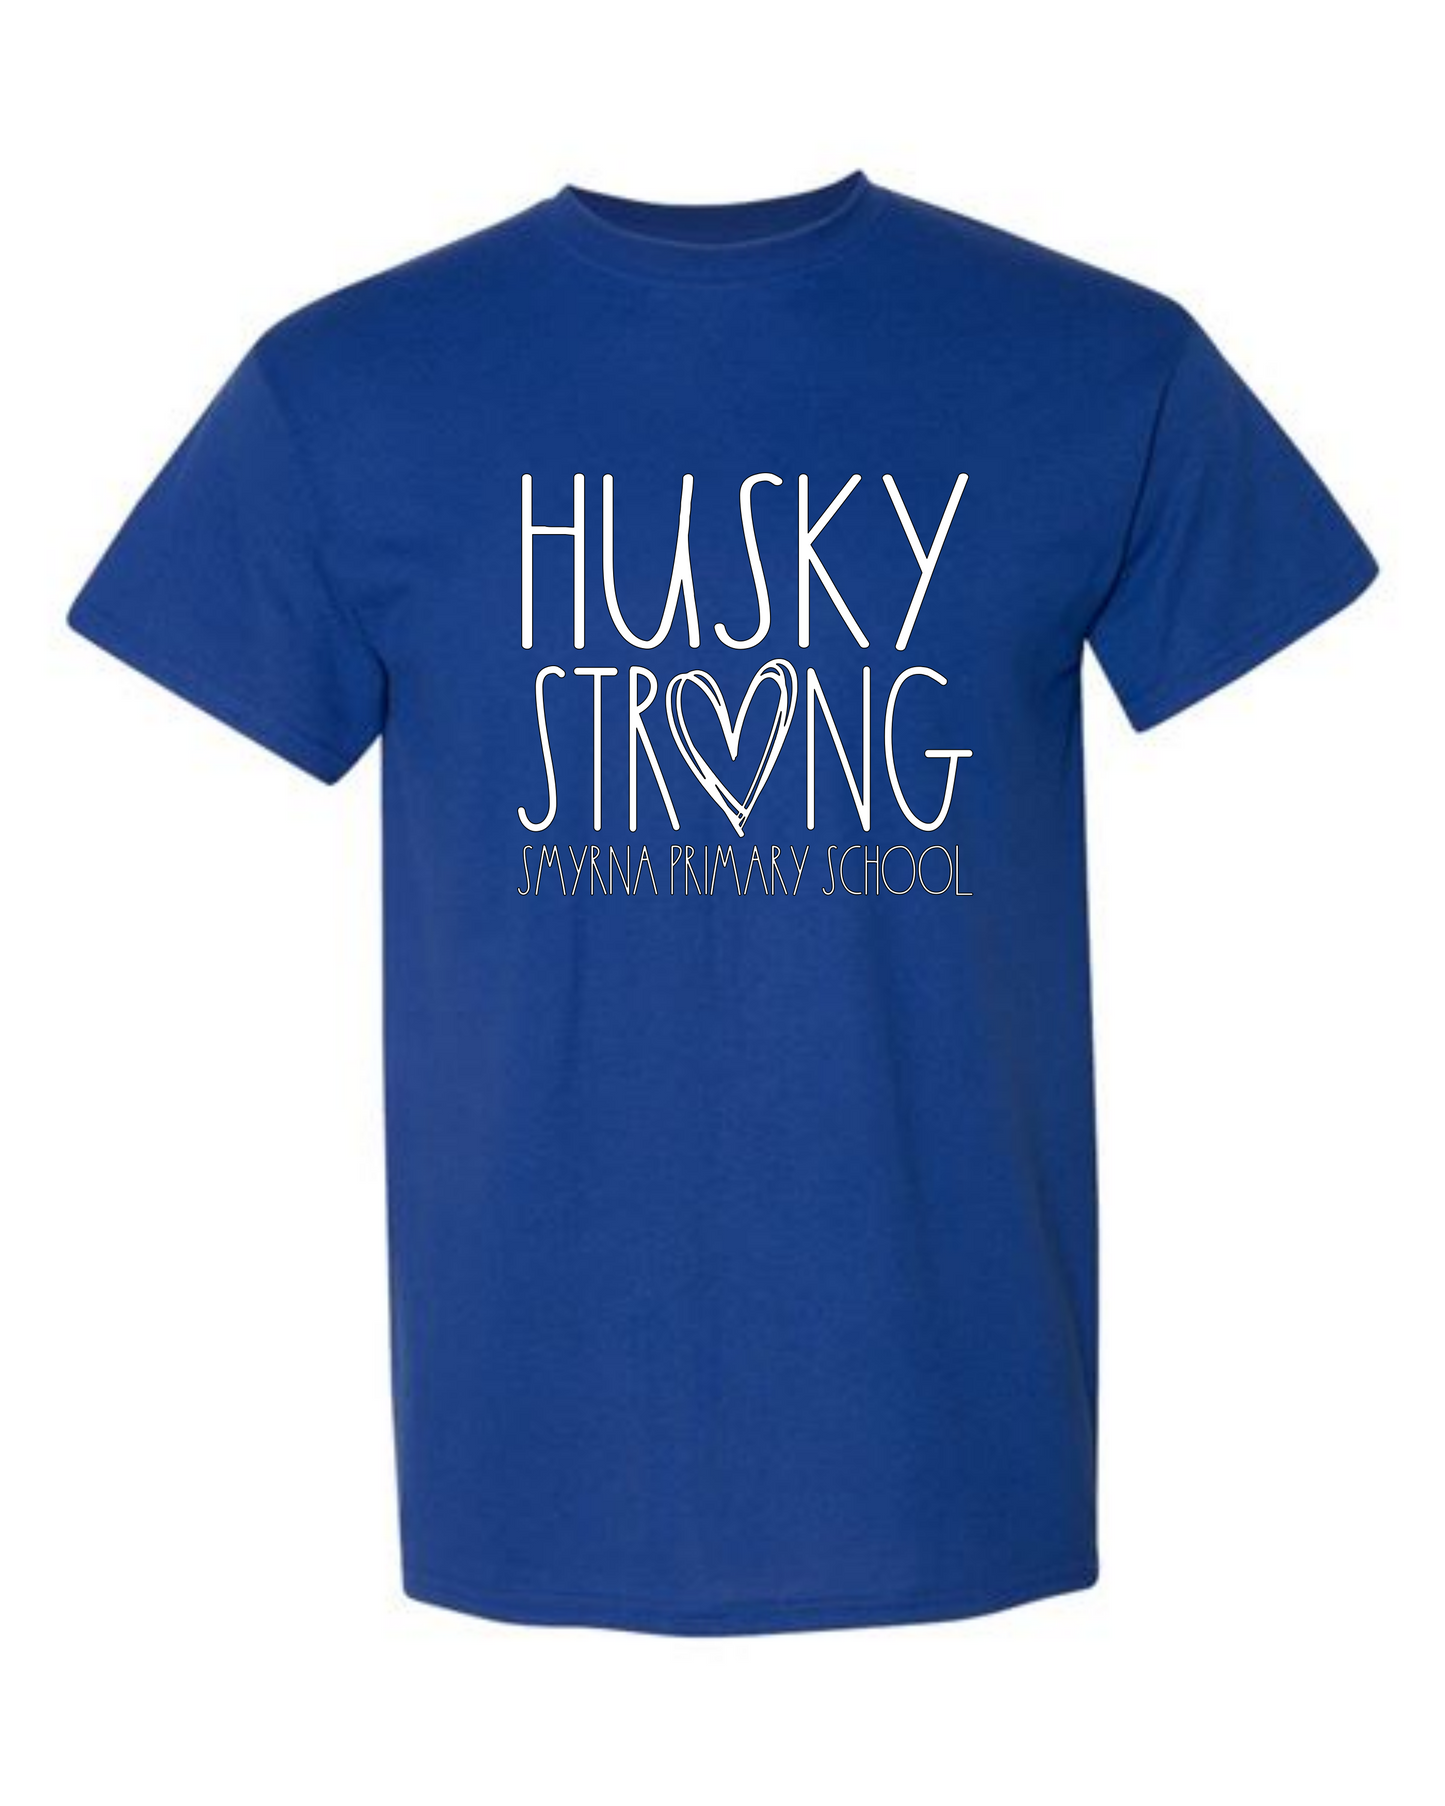 Husky Strong Tshirt